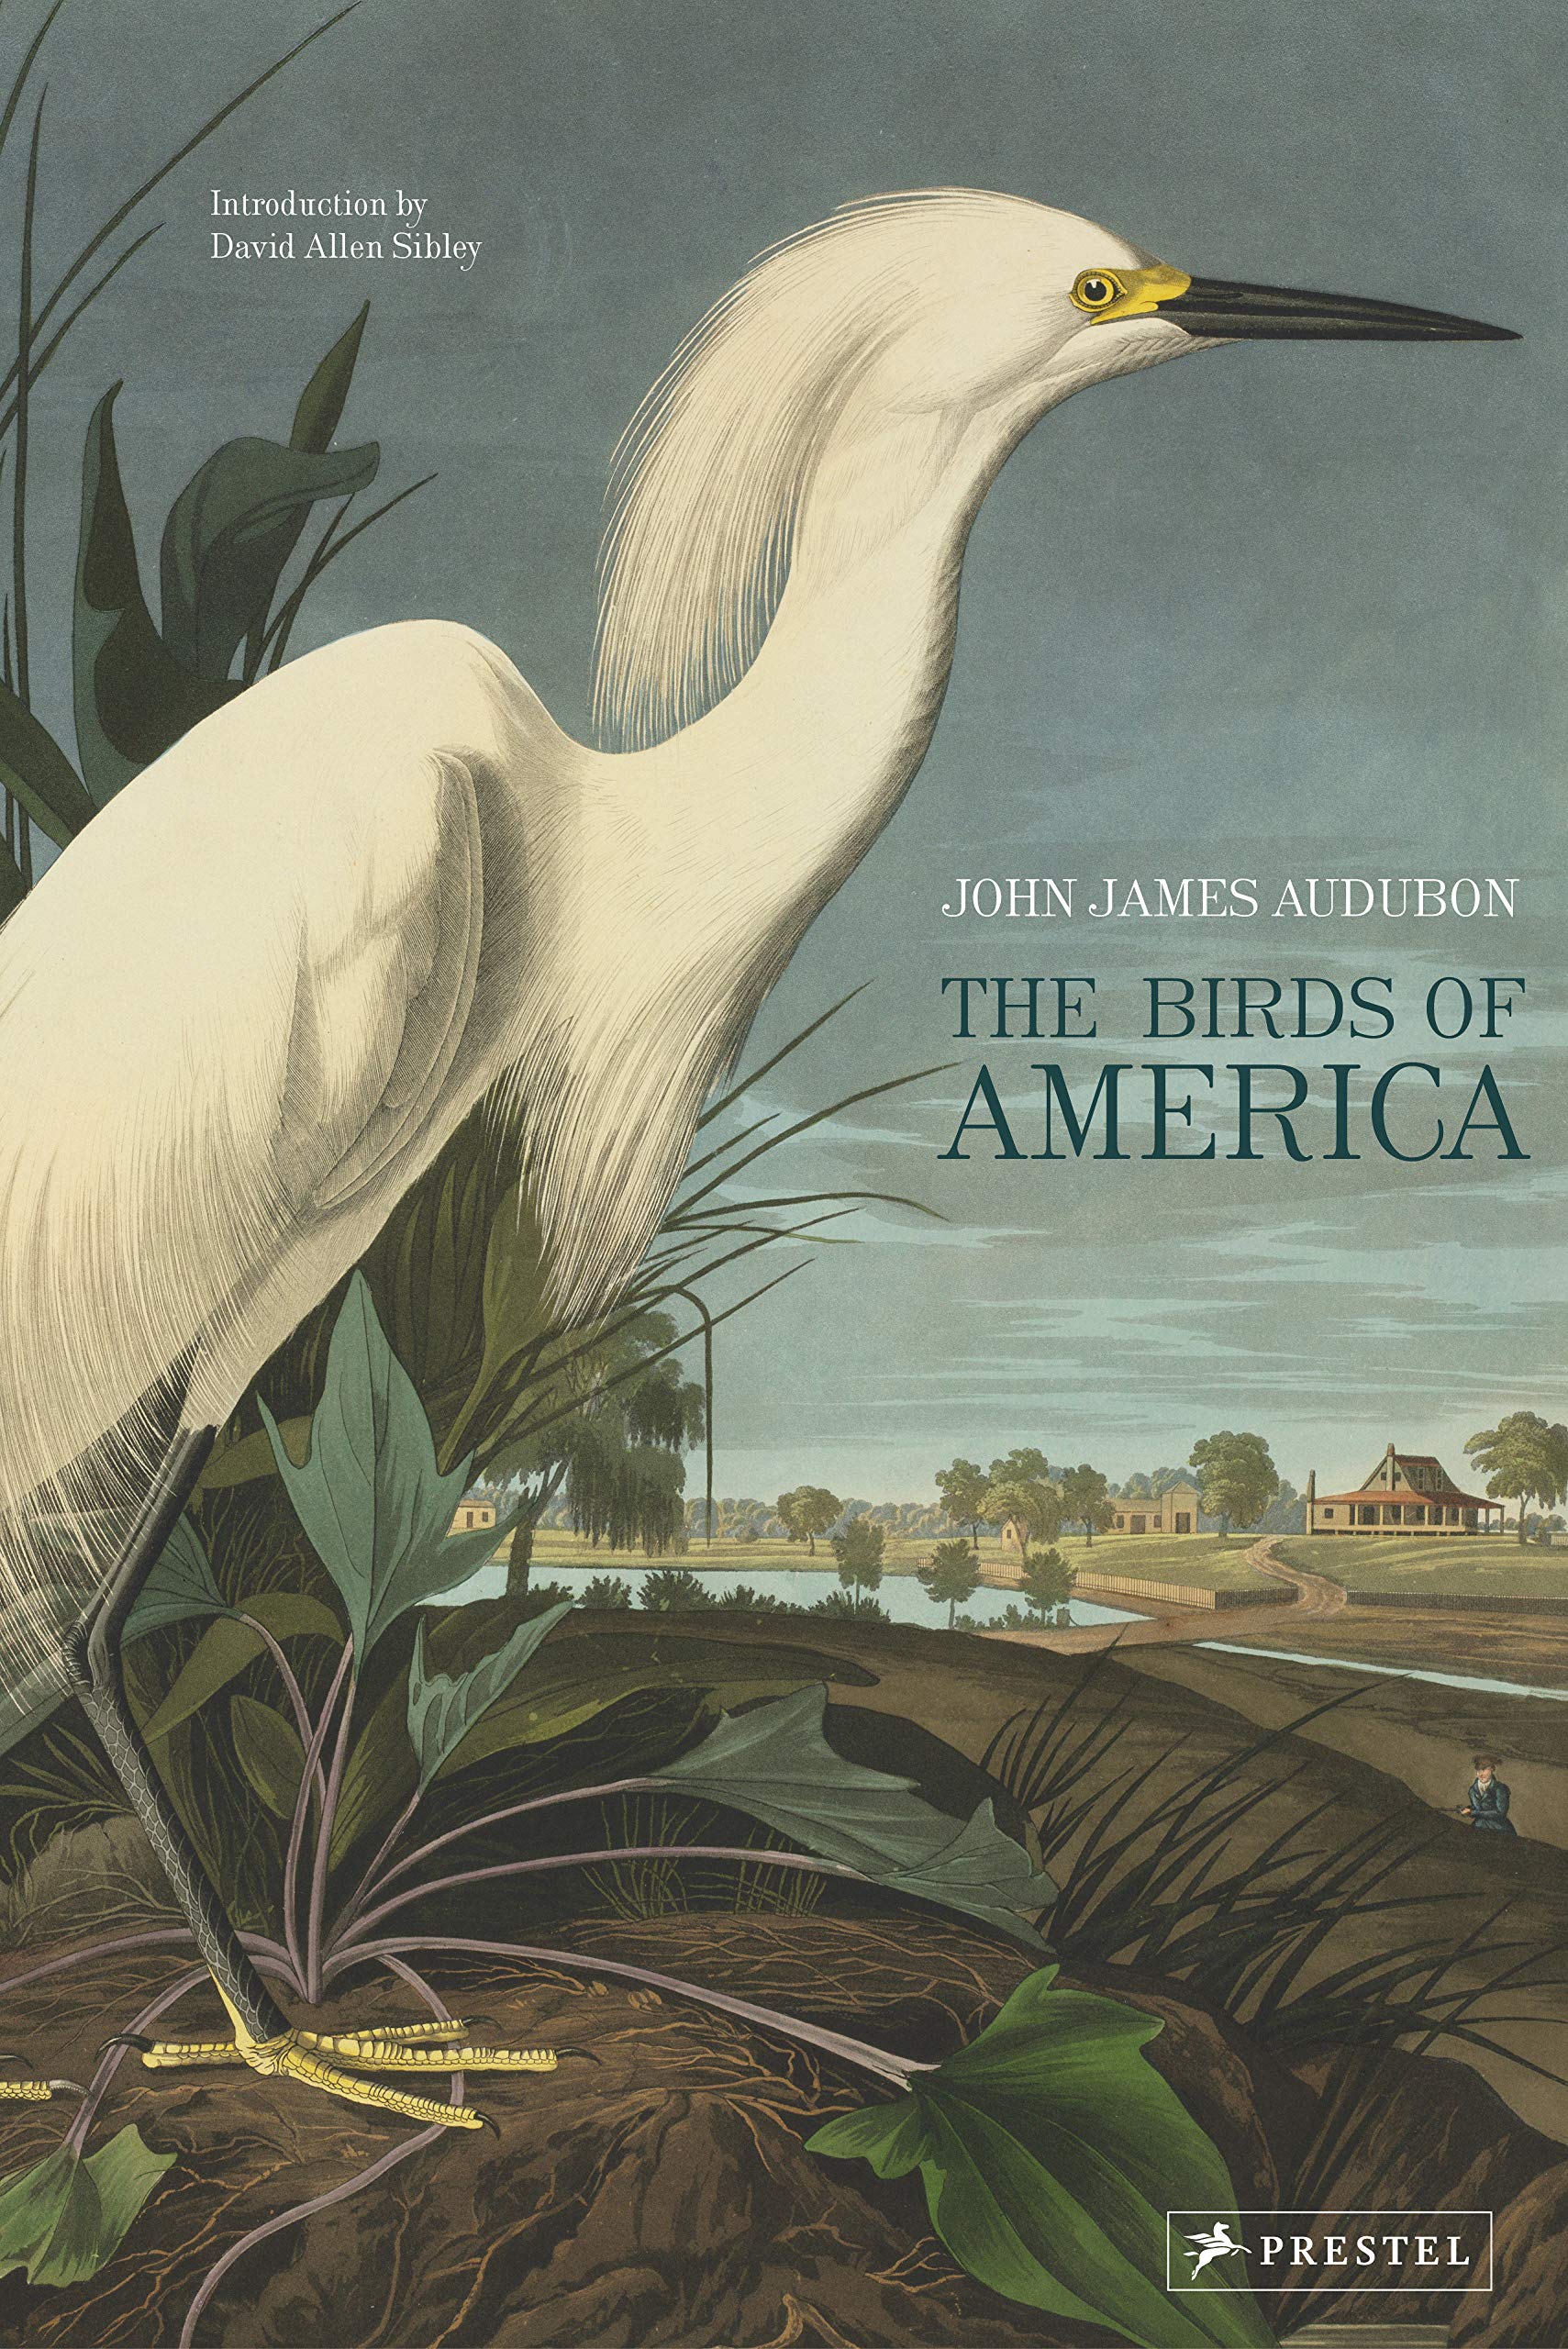 Portada del libro "Birds of America" (Editorial Prestel Publishing)